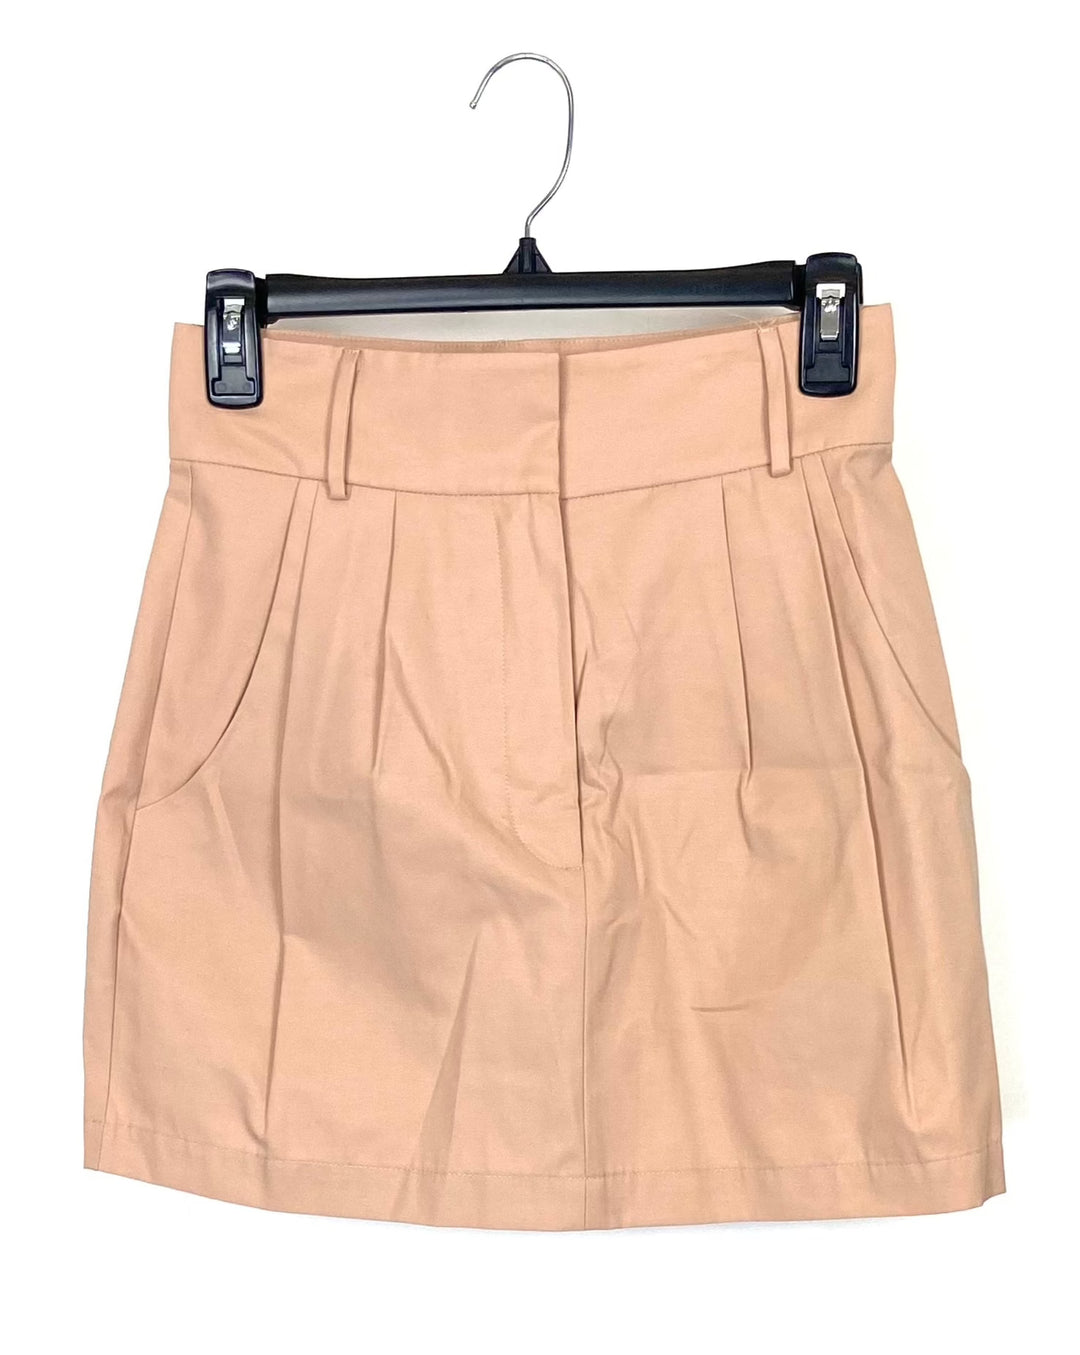 Structured Beige Skirt - Size 4-6